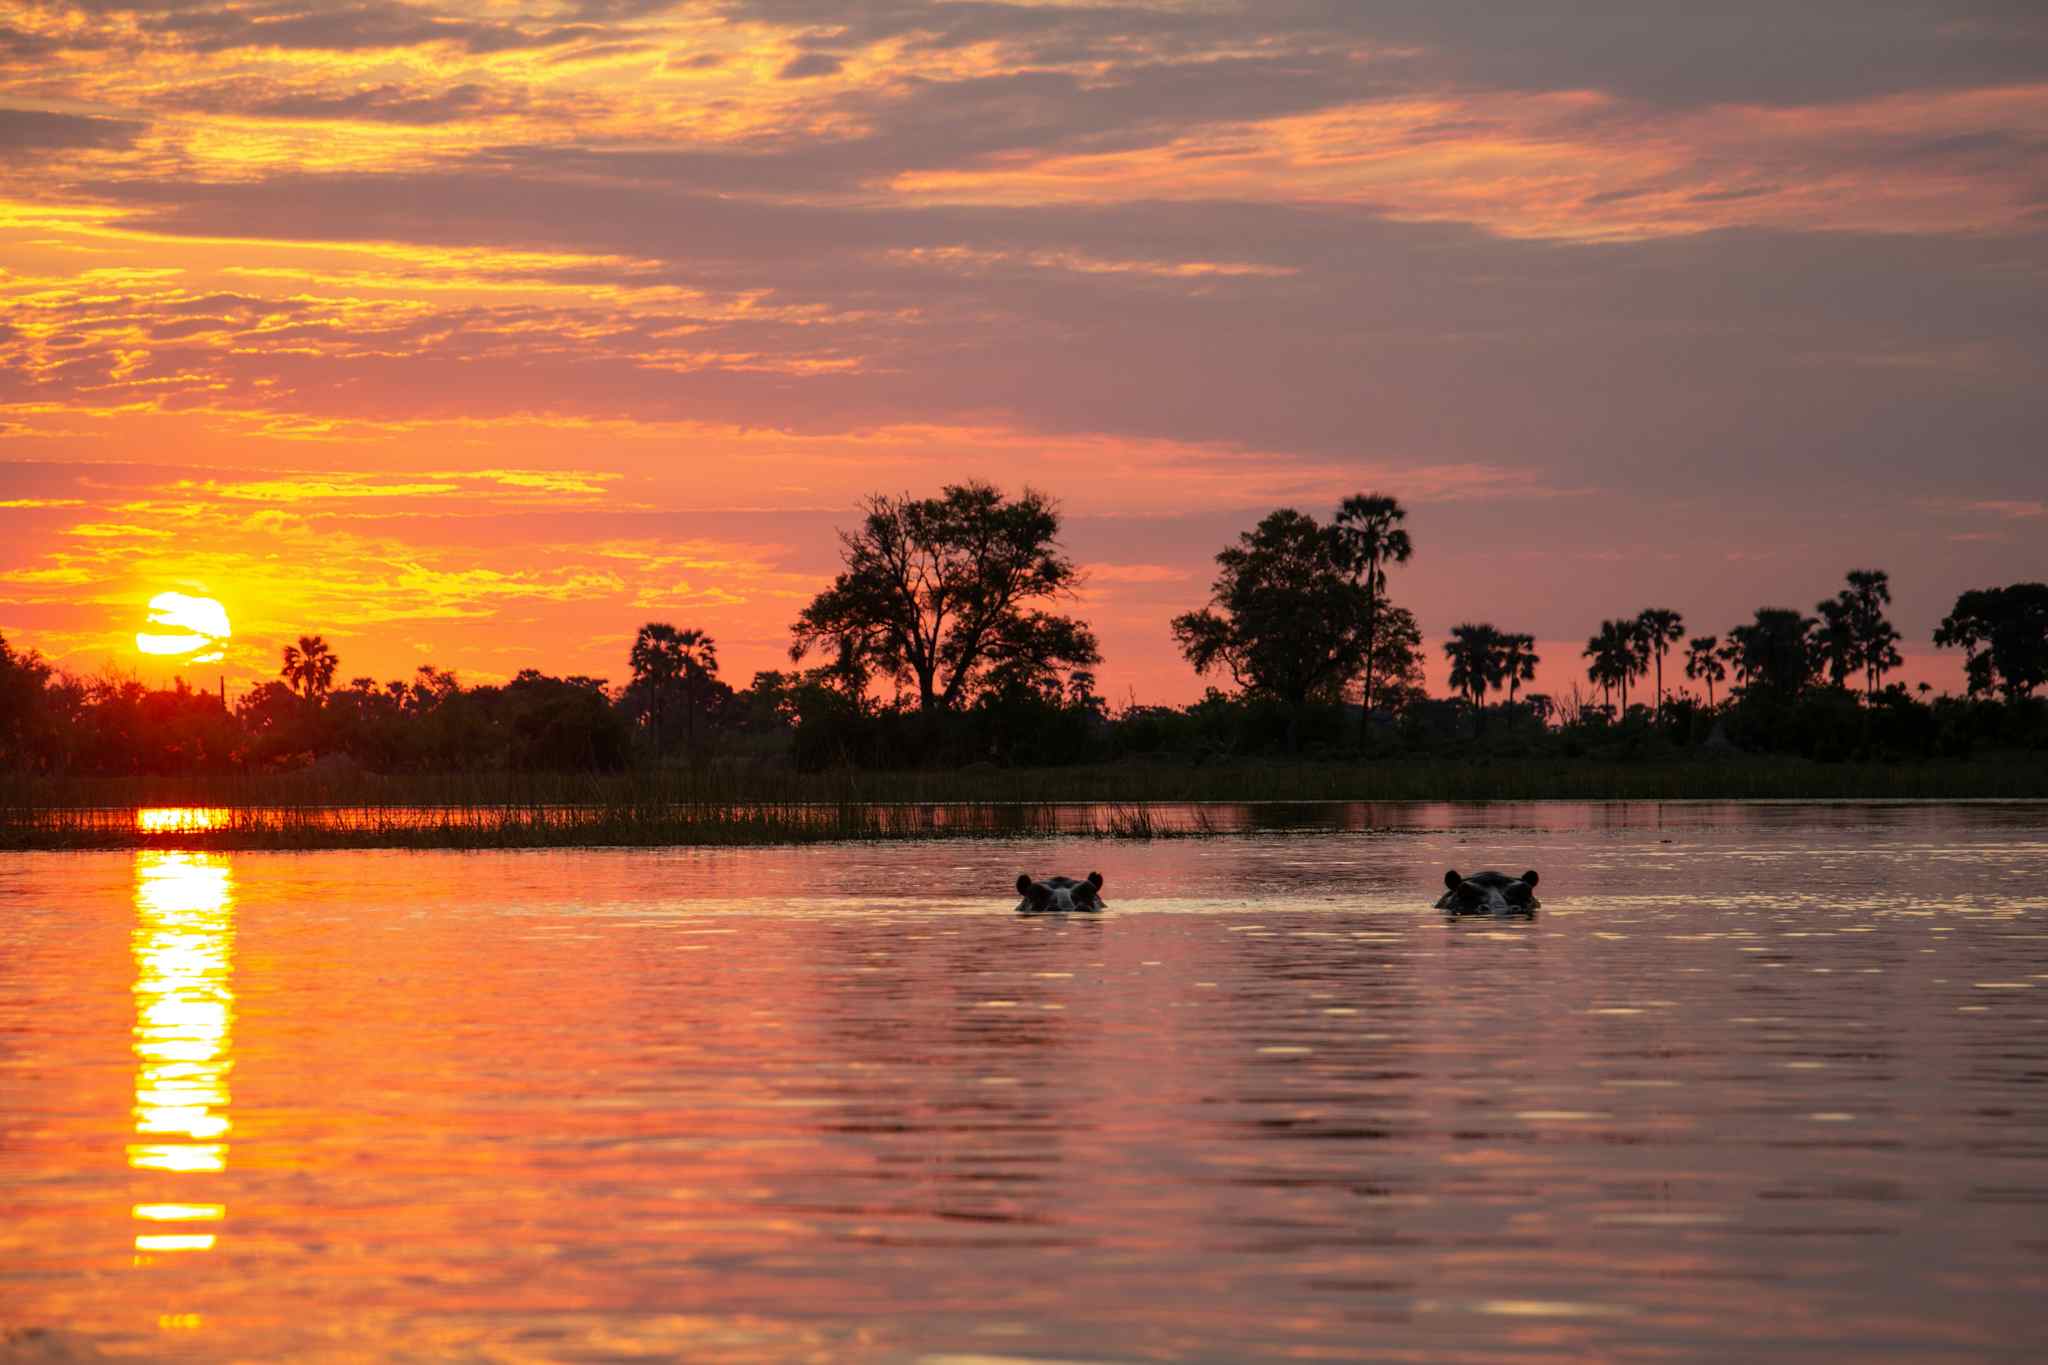 STAFF - Hippos in the Okavango Delta, Botswana at sunset. Photo: Staff/Chris Kearney
